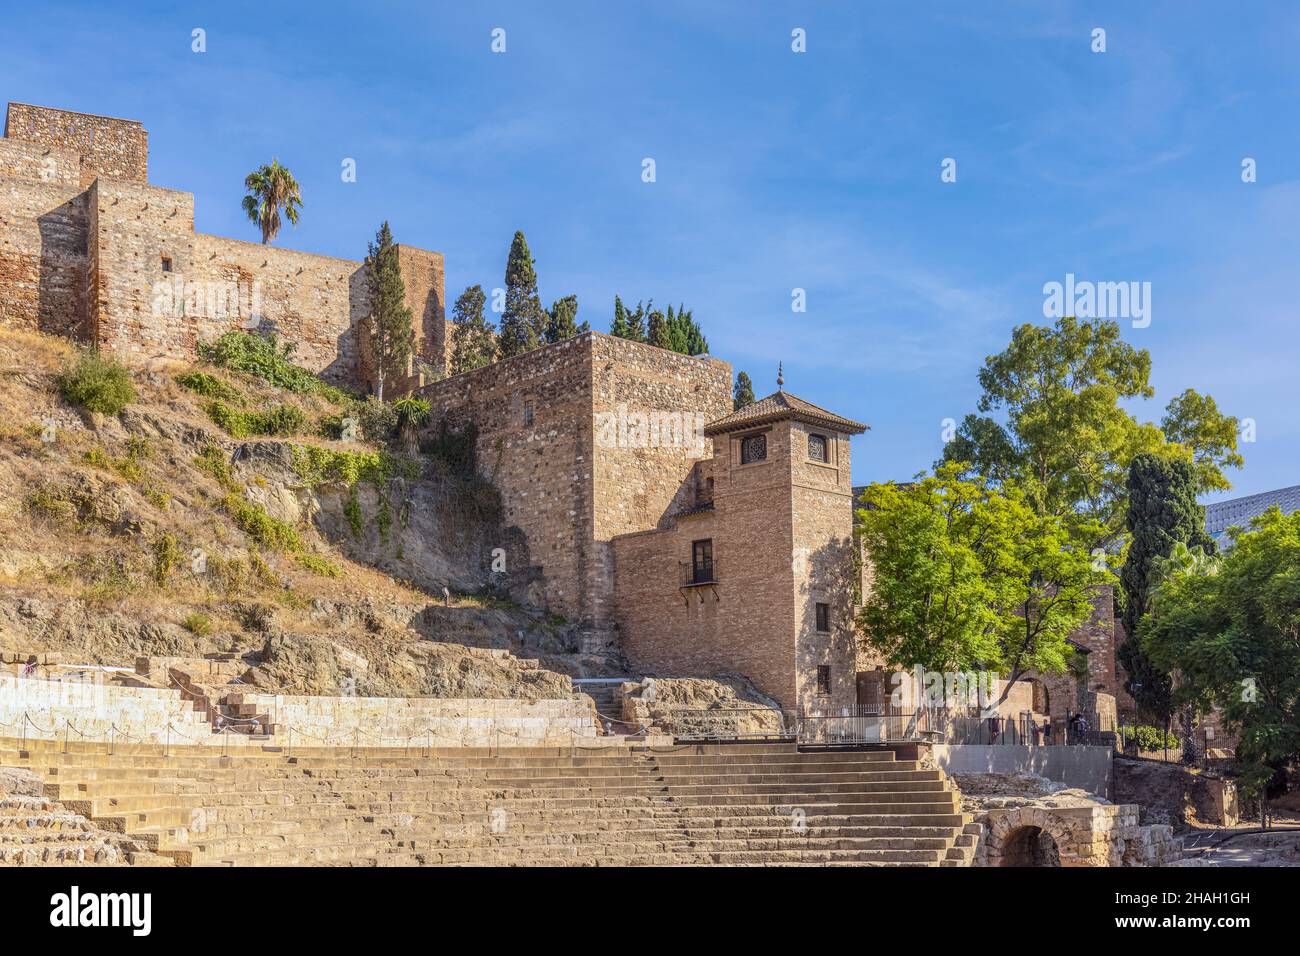 Le théâtre romain sous les murs de l'Alcazaba mauresque, ou forteresse, Malaga, Costa del sol, province de Malaga,Andalousie, sud de l'Espagne.Le thea Banque D'Images